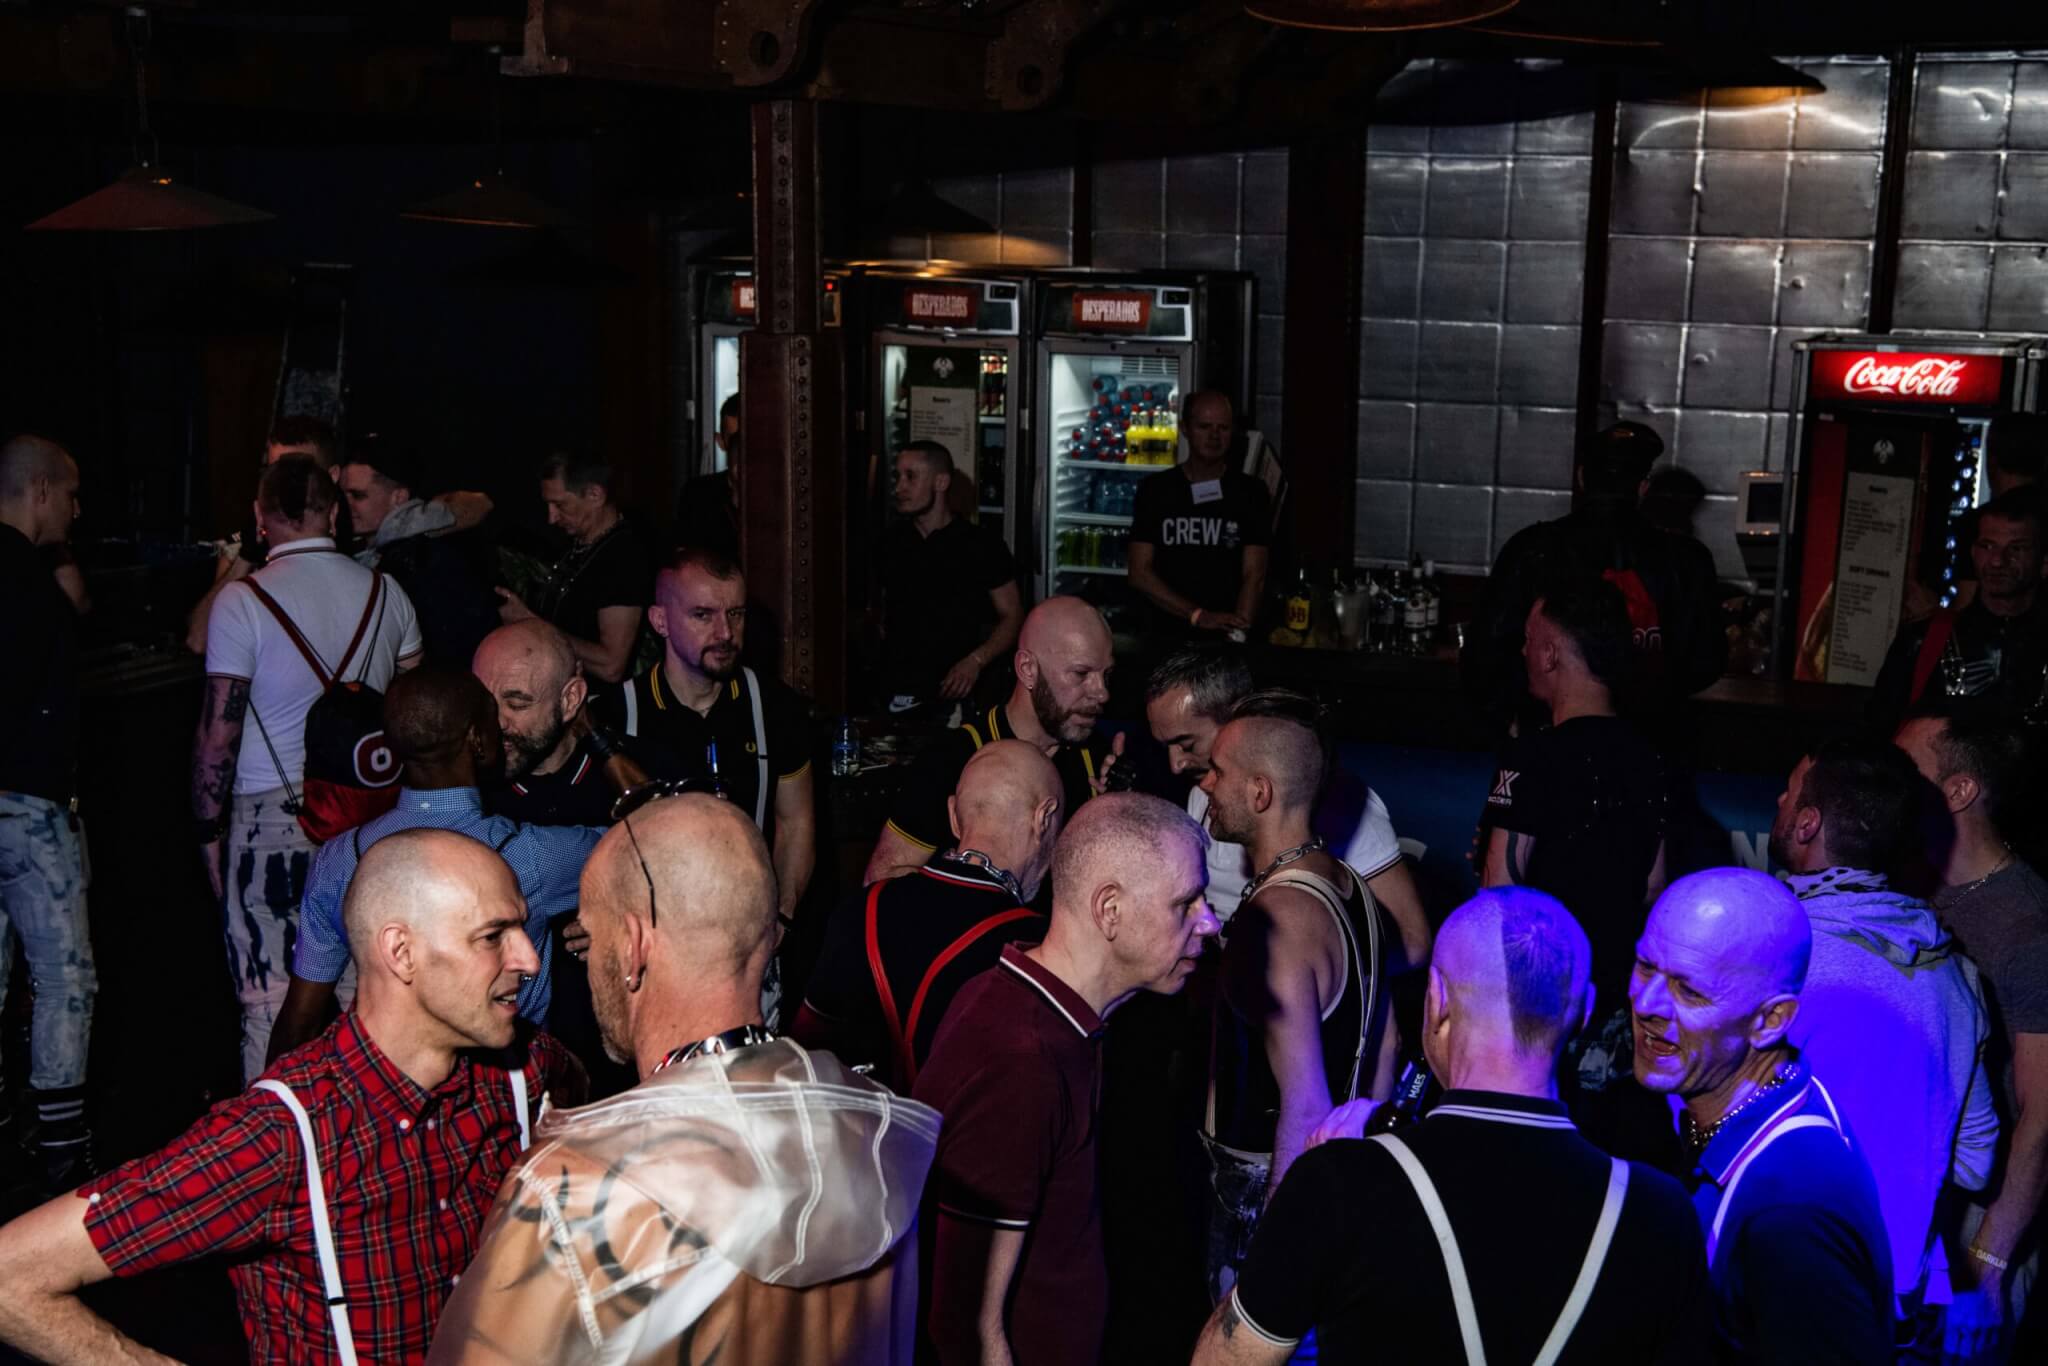 Sono uno skinhead gay e non sono neo-nazi: intervista a una confraternita - 2019 Darklands by the dutch photographer 5919 scaled - Gay.it